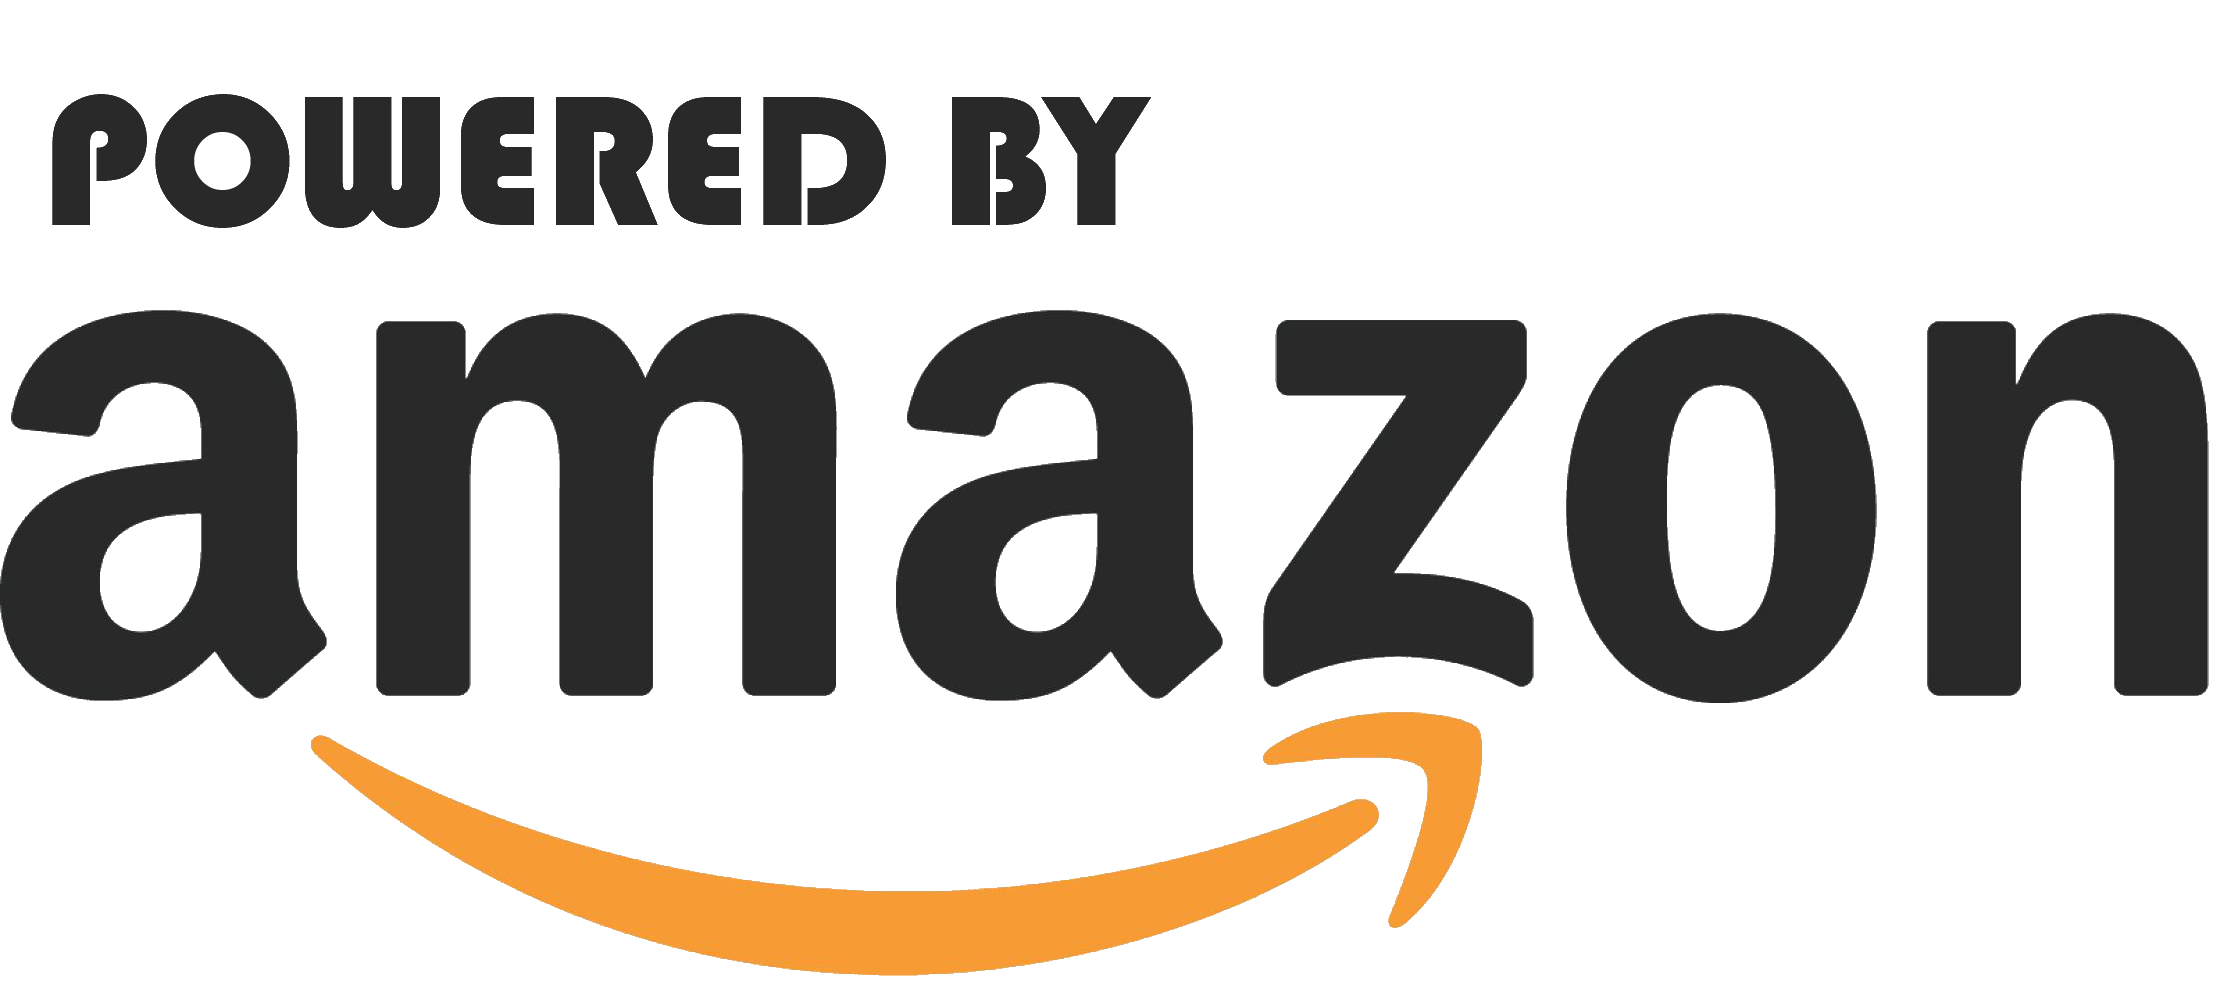 Amazon logo image